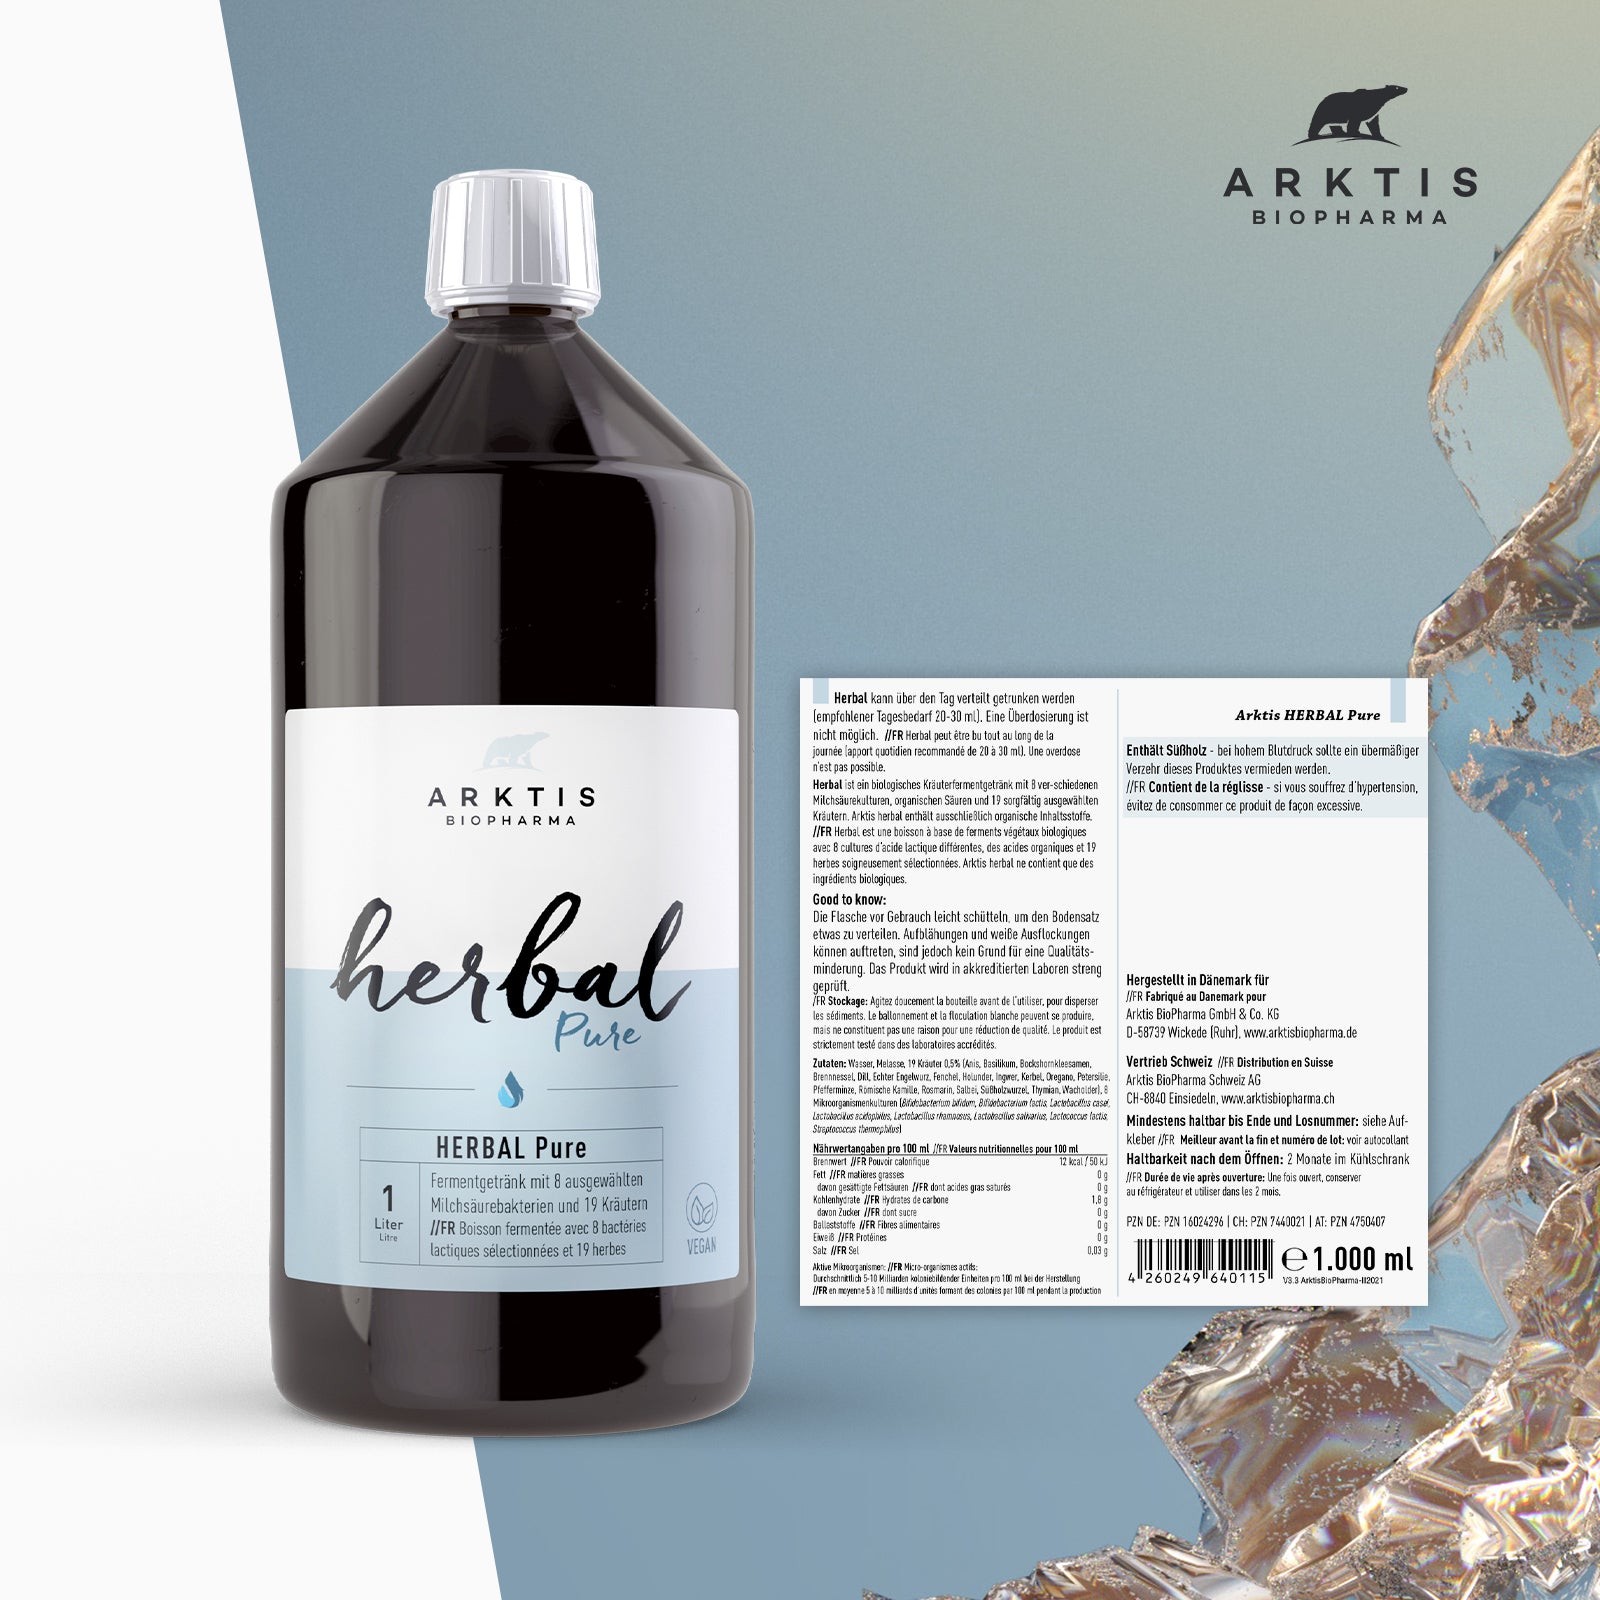 Arktis Herbal “Pure” – Arktis BioPharma & Danuwa